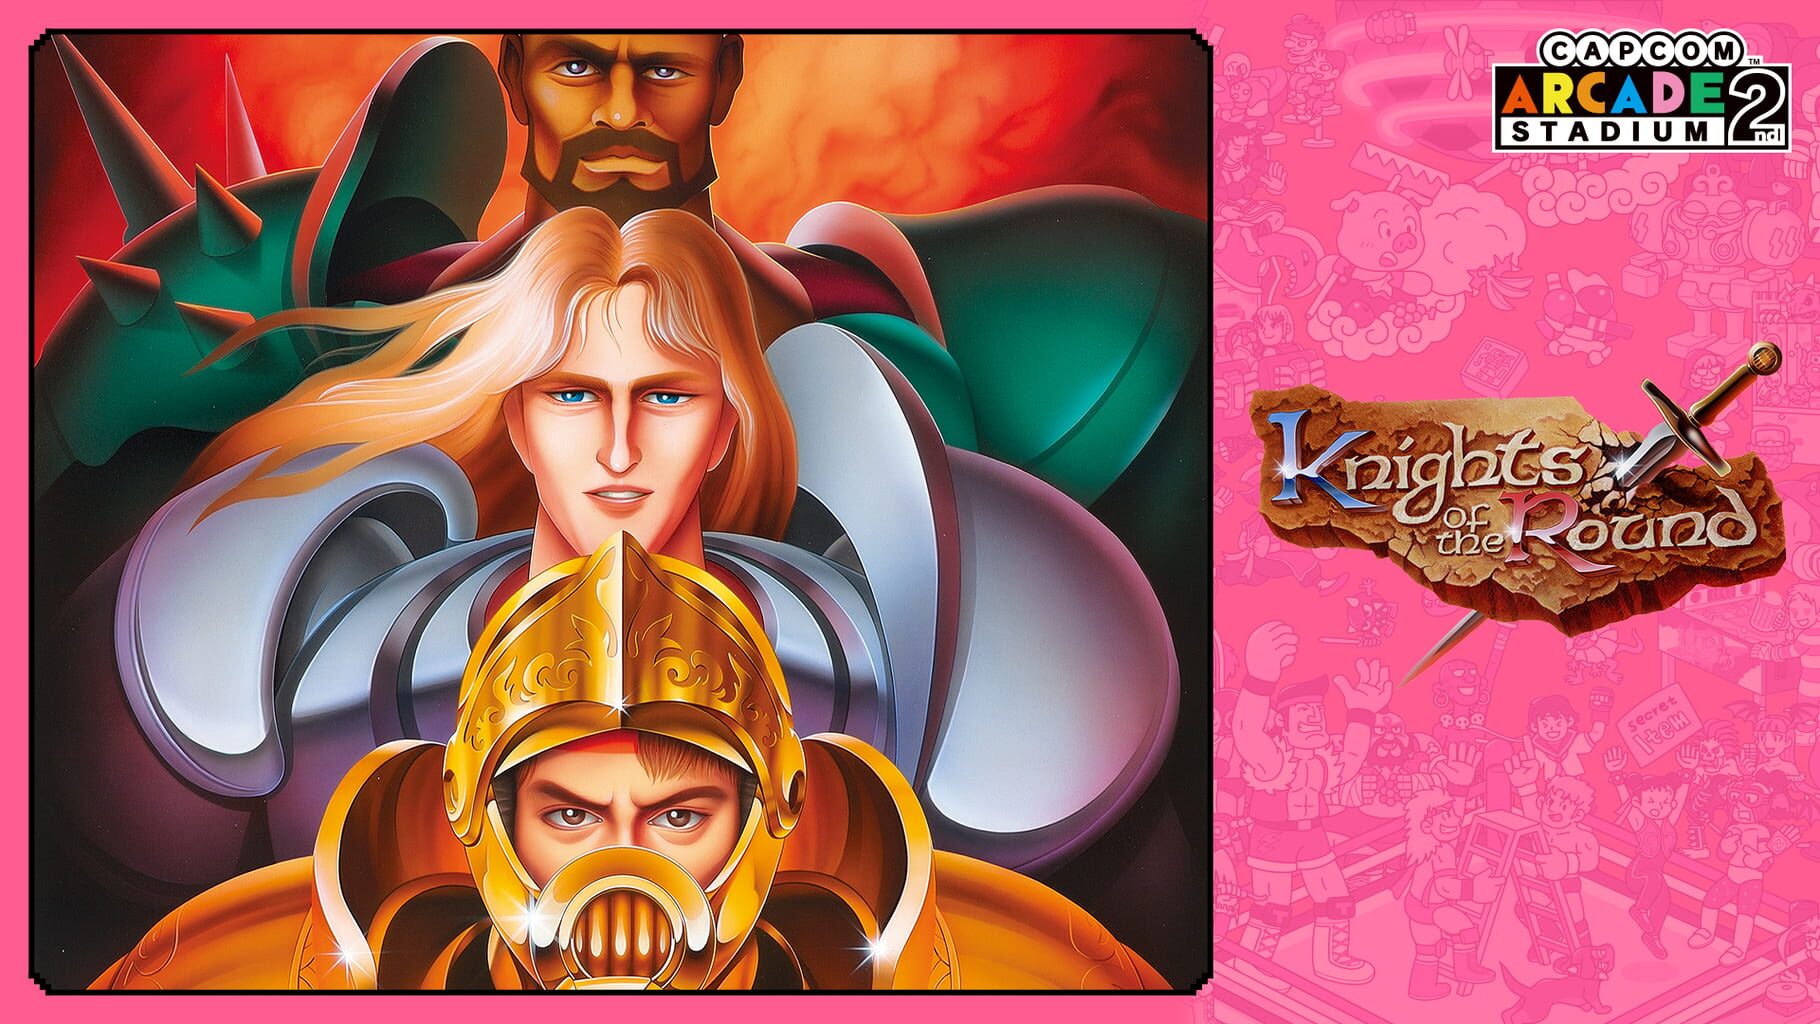 Capcom Arcade 2nd Stadium: A.K.A Knights of the Round artwork